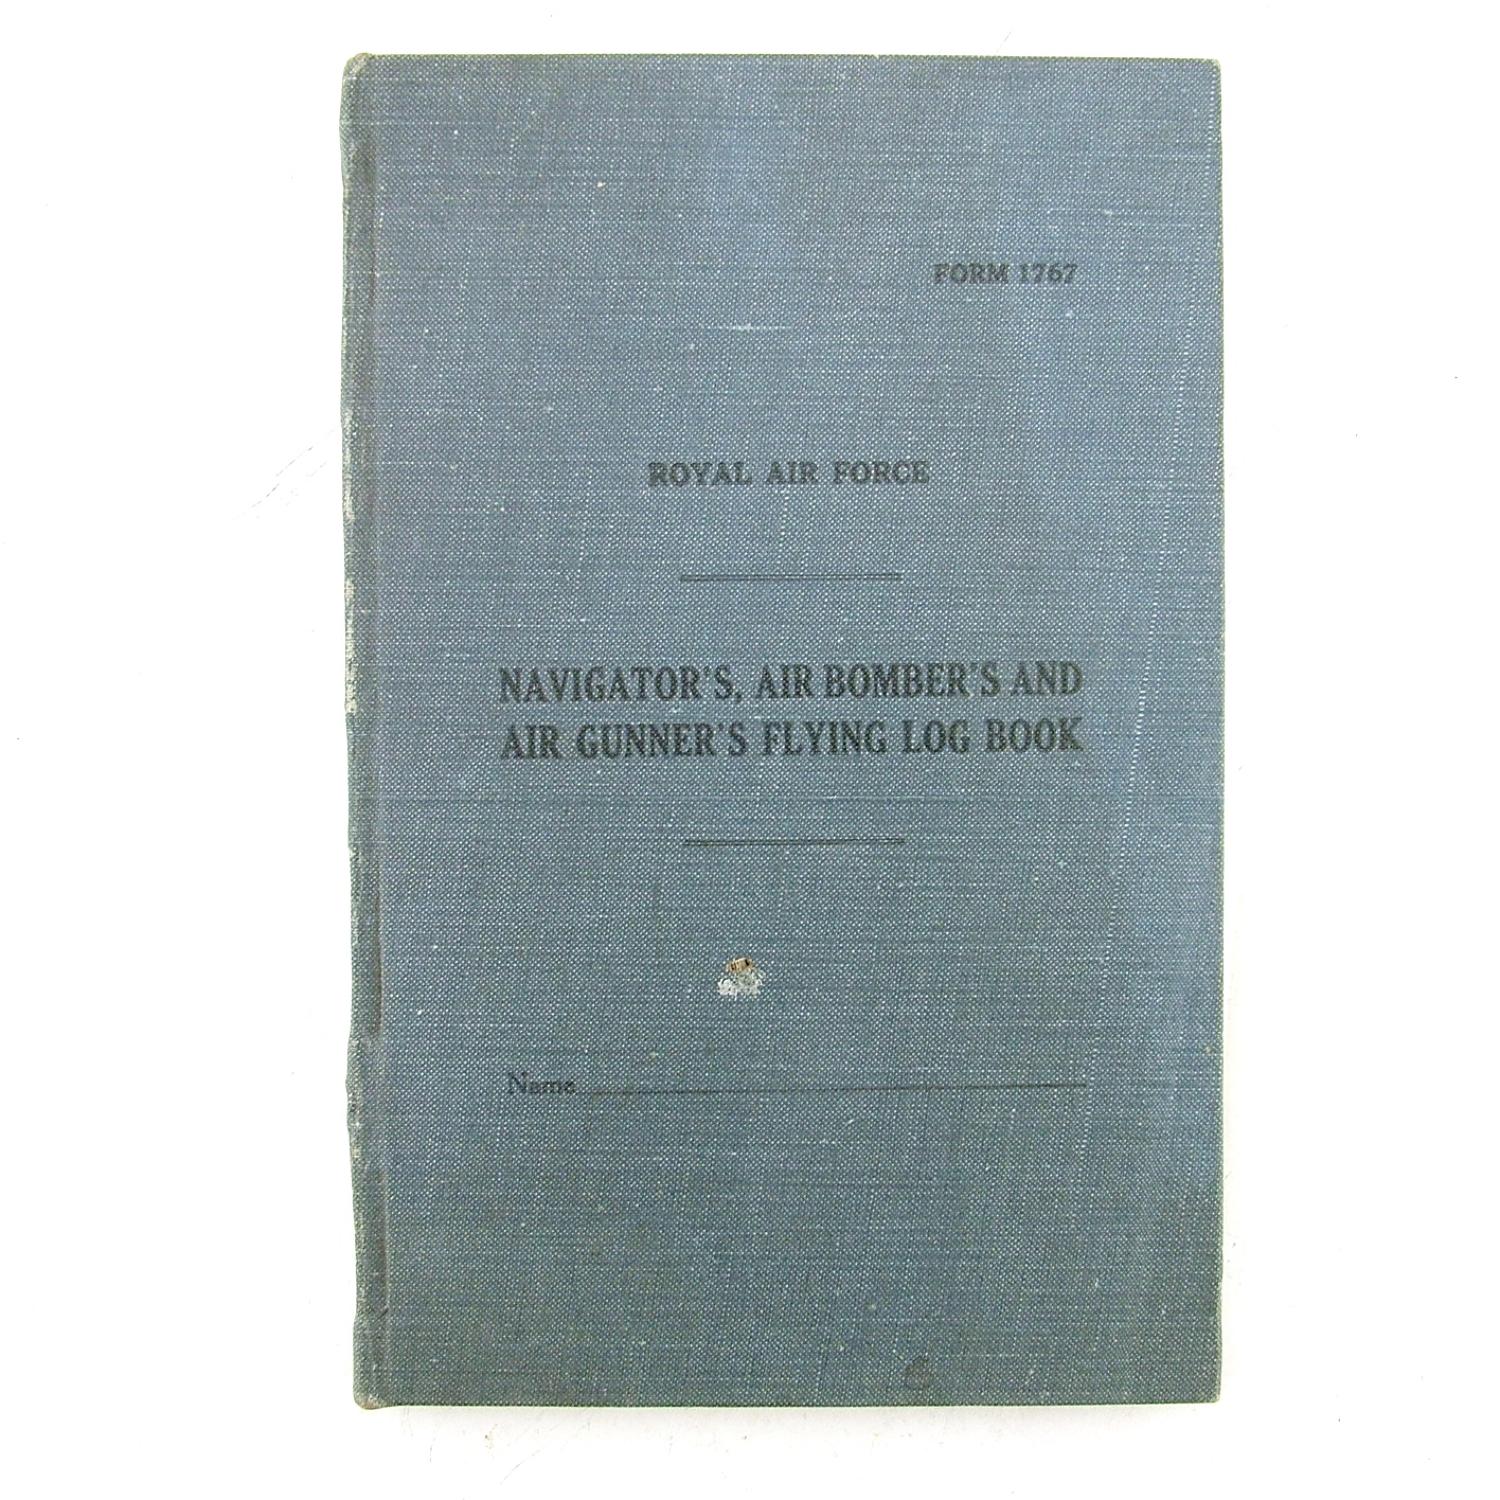 RAF flying log book